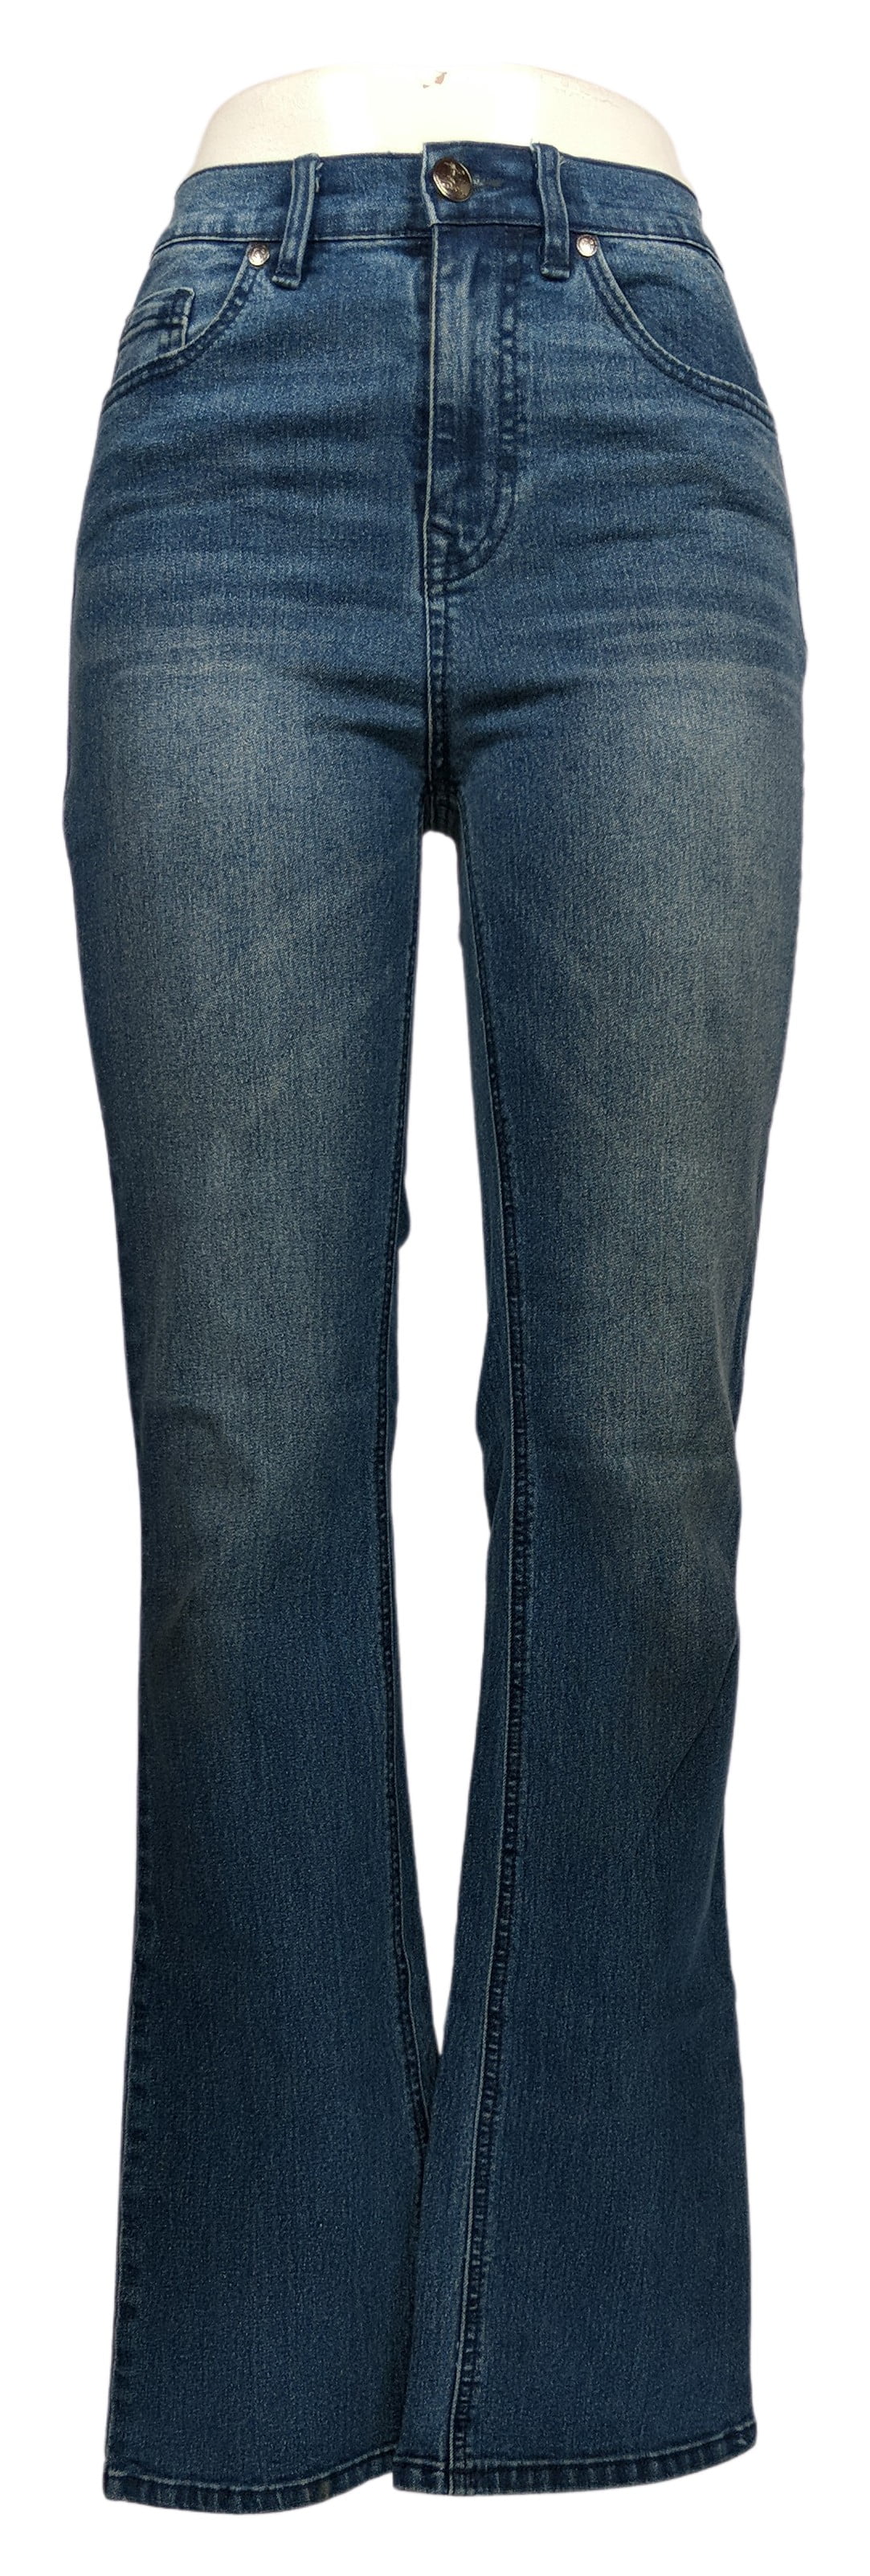 diane gilman classic stretch jeans